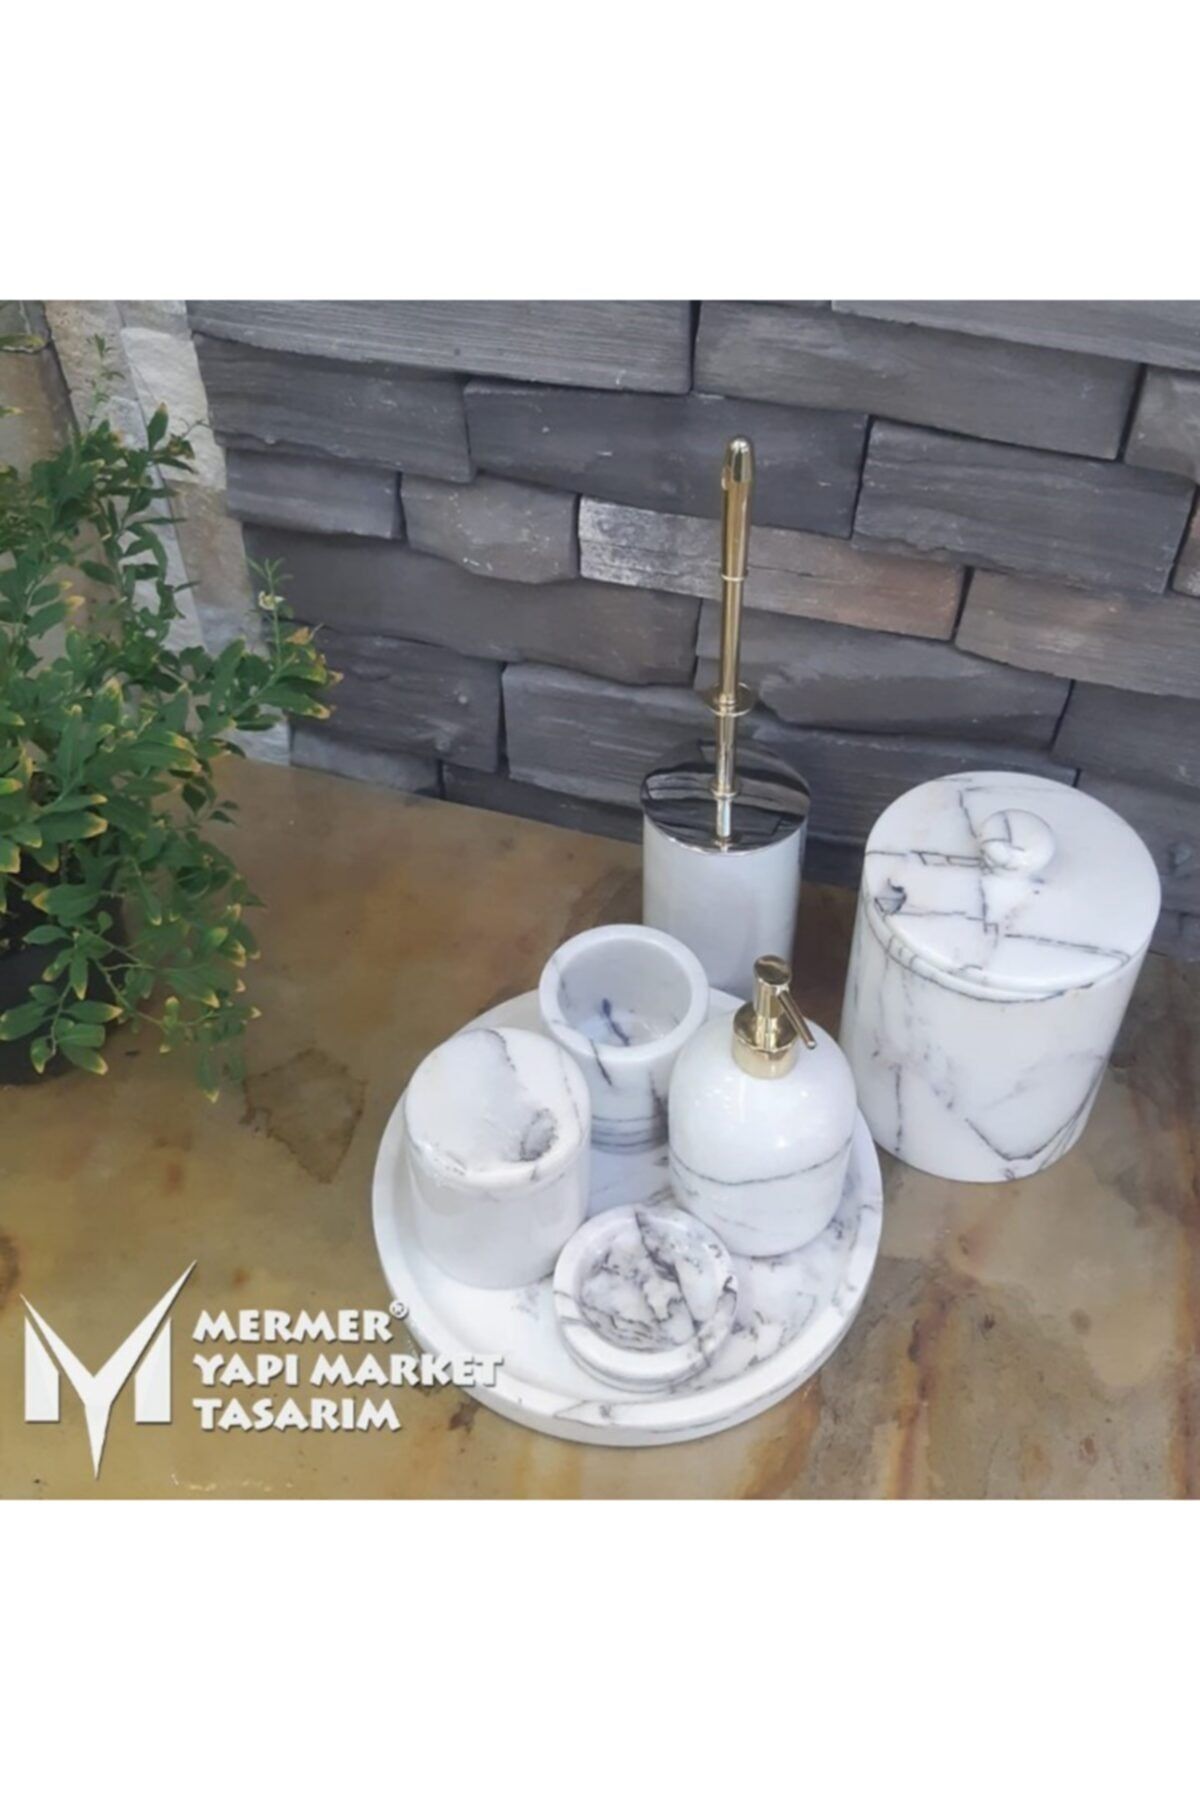 MYM Mermer Yapı Market Tasarım Leylak Mermer 7 Parça Banyo Seti